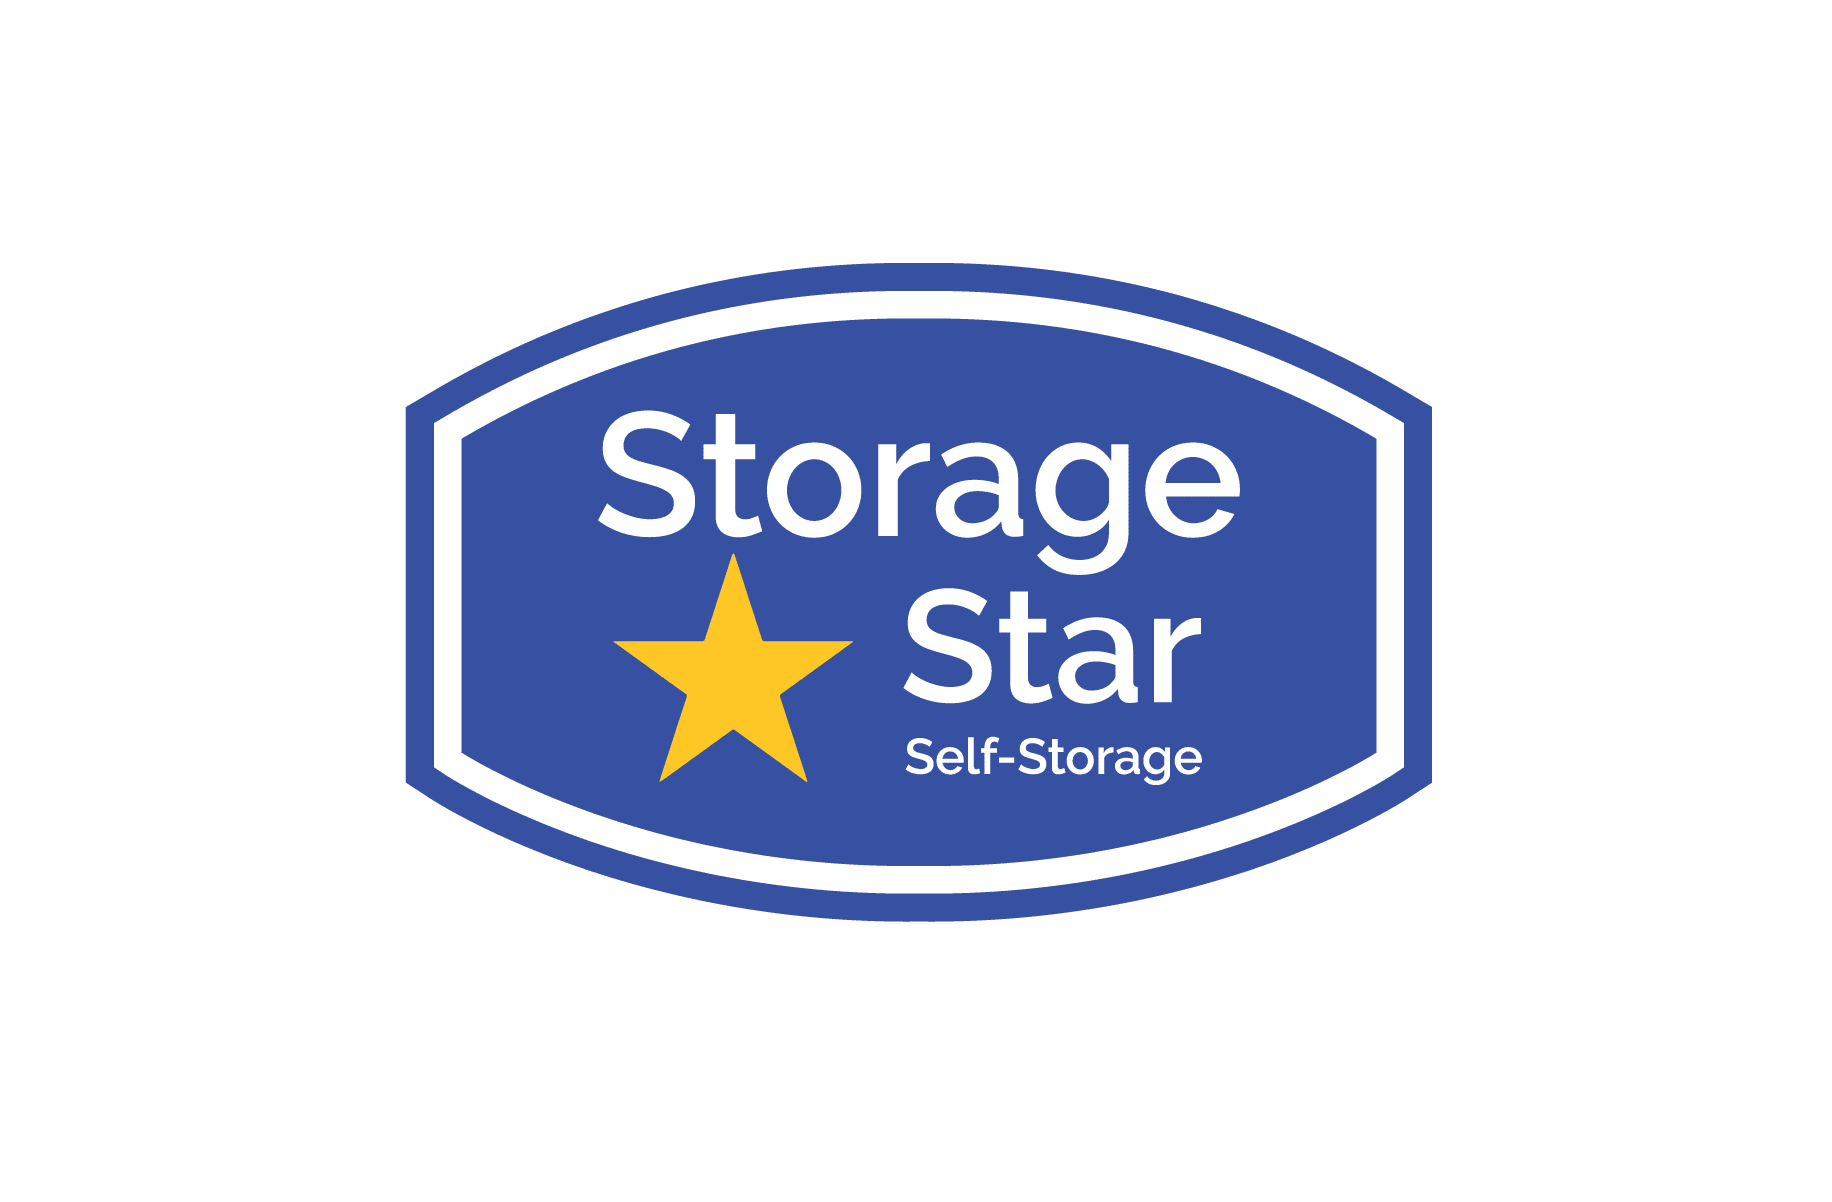 Storage Star - Downtown Modesto in Modesto, California logo